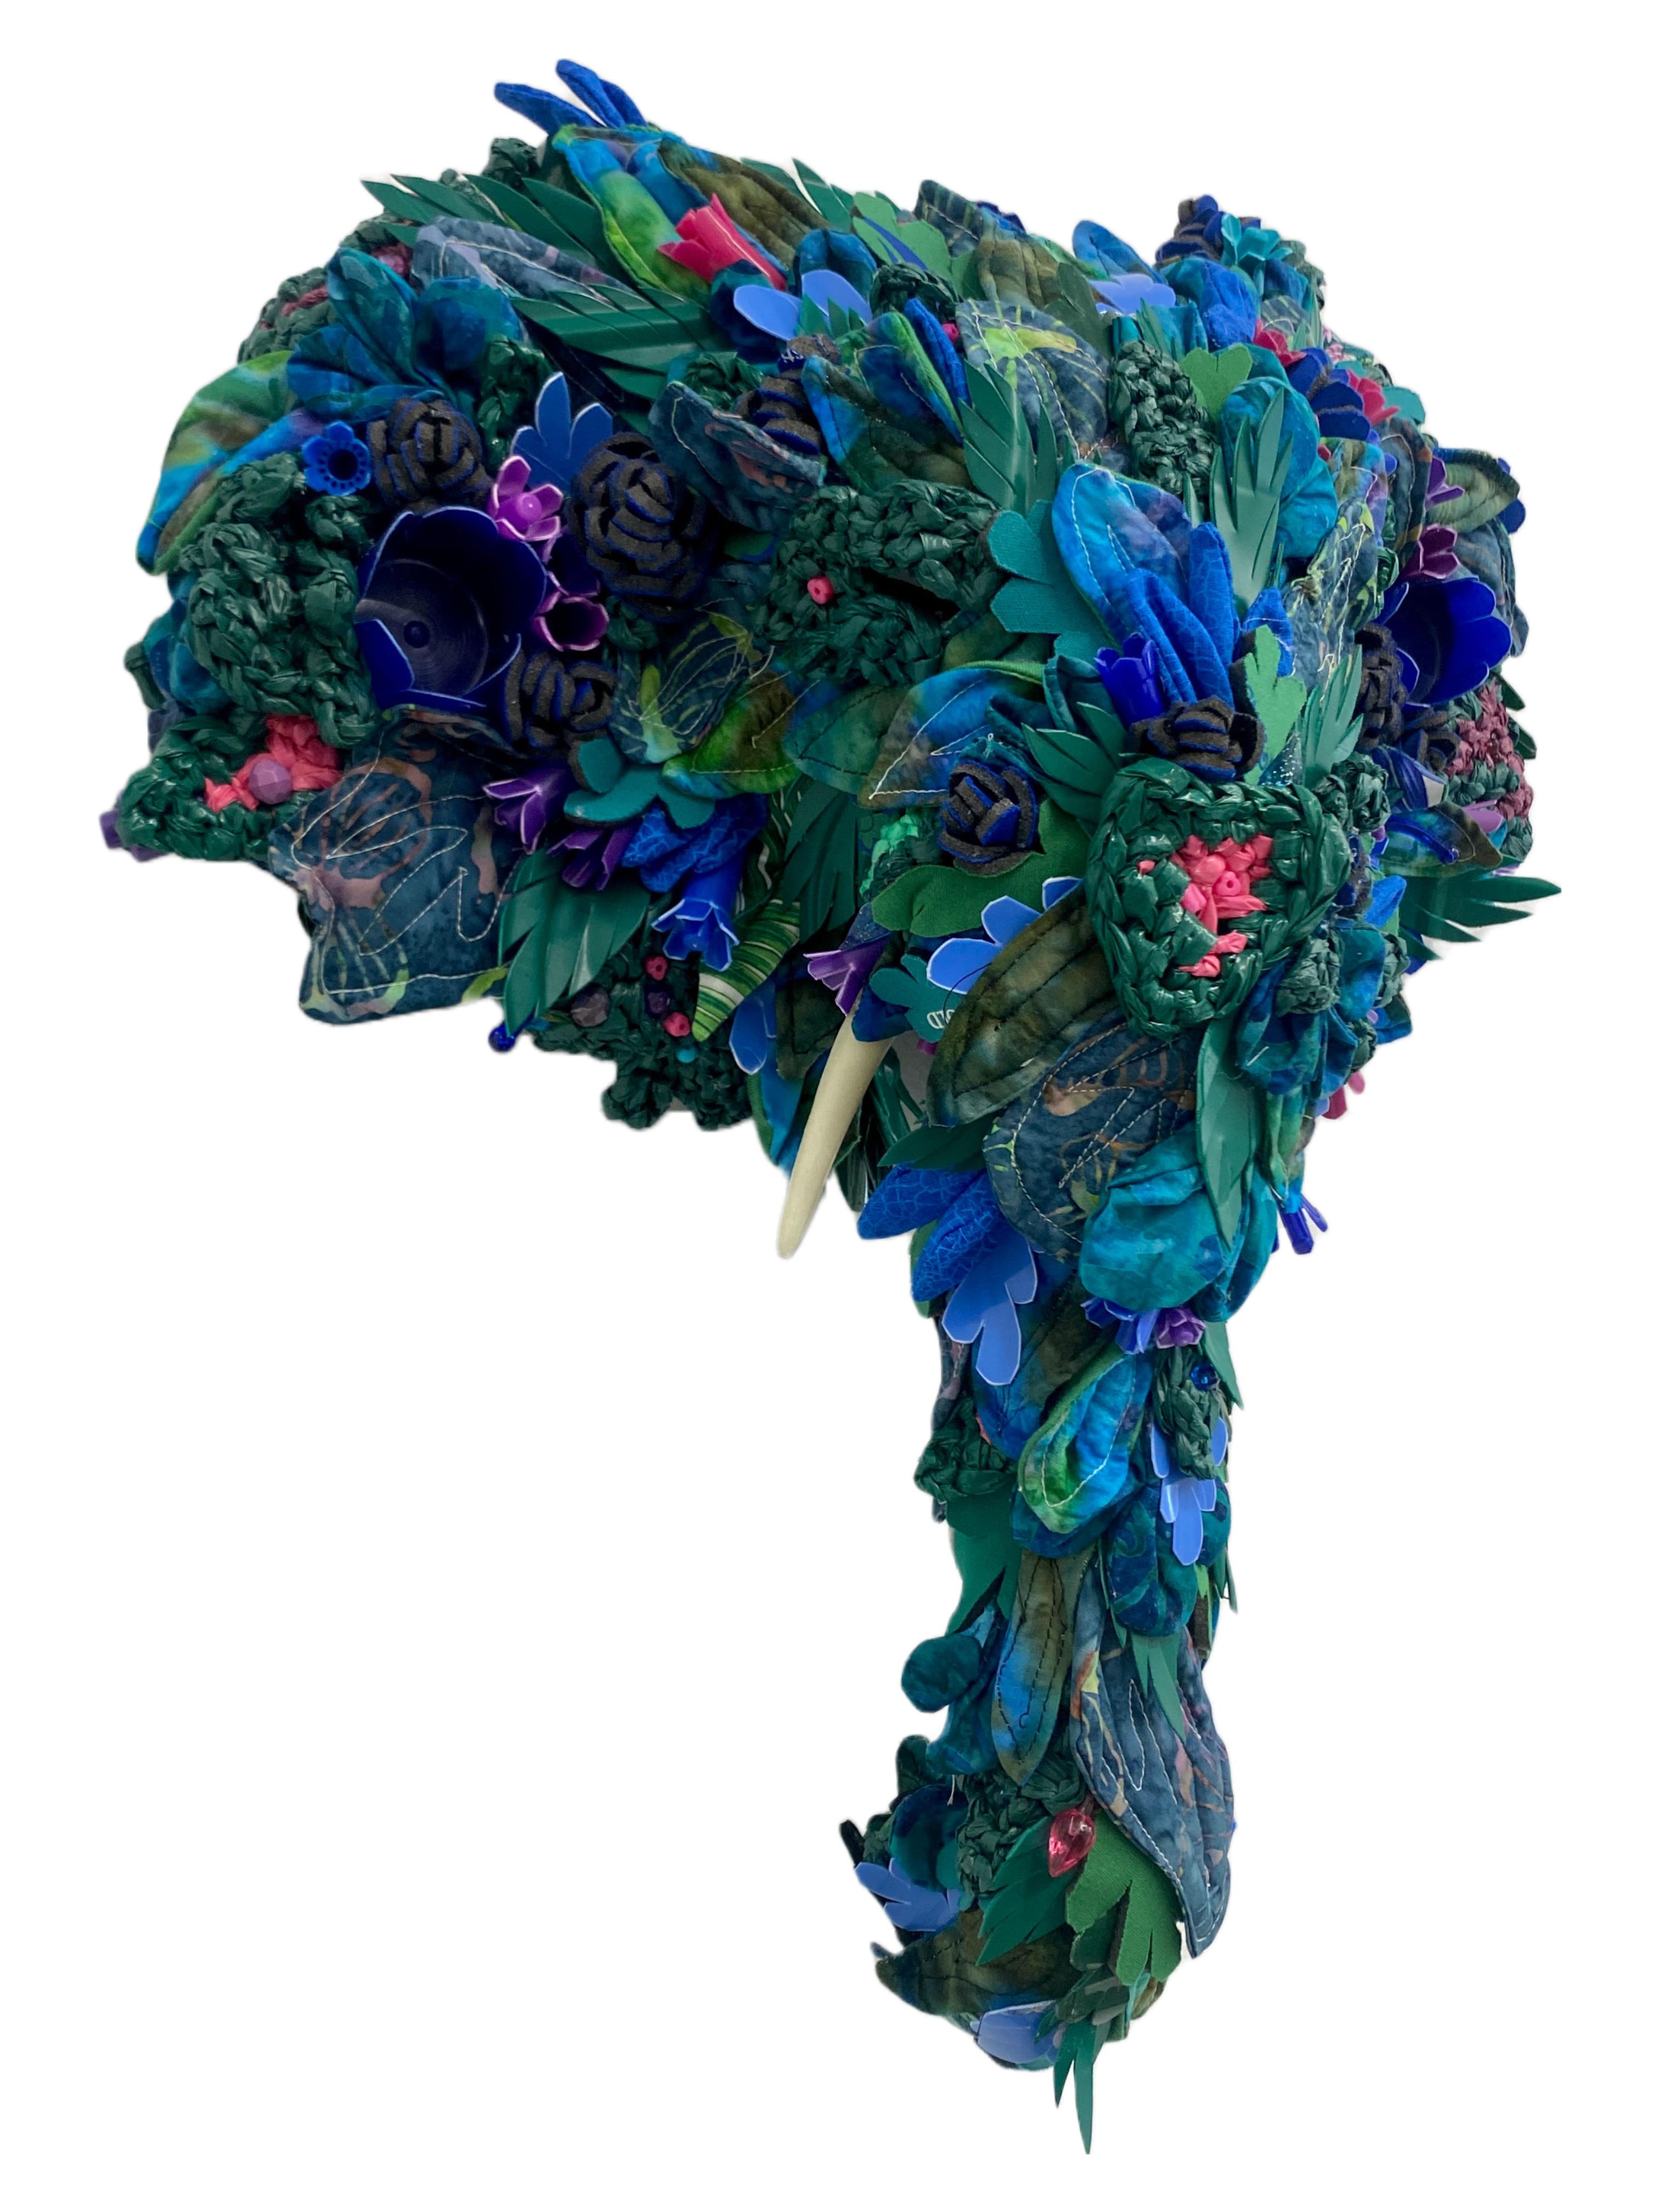 Jardinière éléphant, sculpture murale contemporaine, assemblage de matériaux recyclés - Sculpture de Calder Kamin